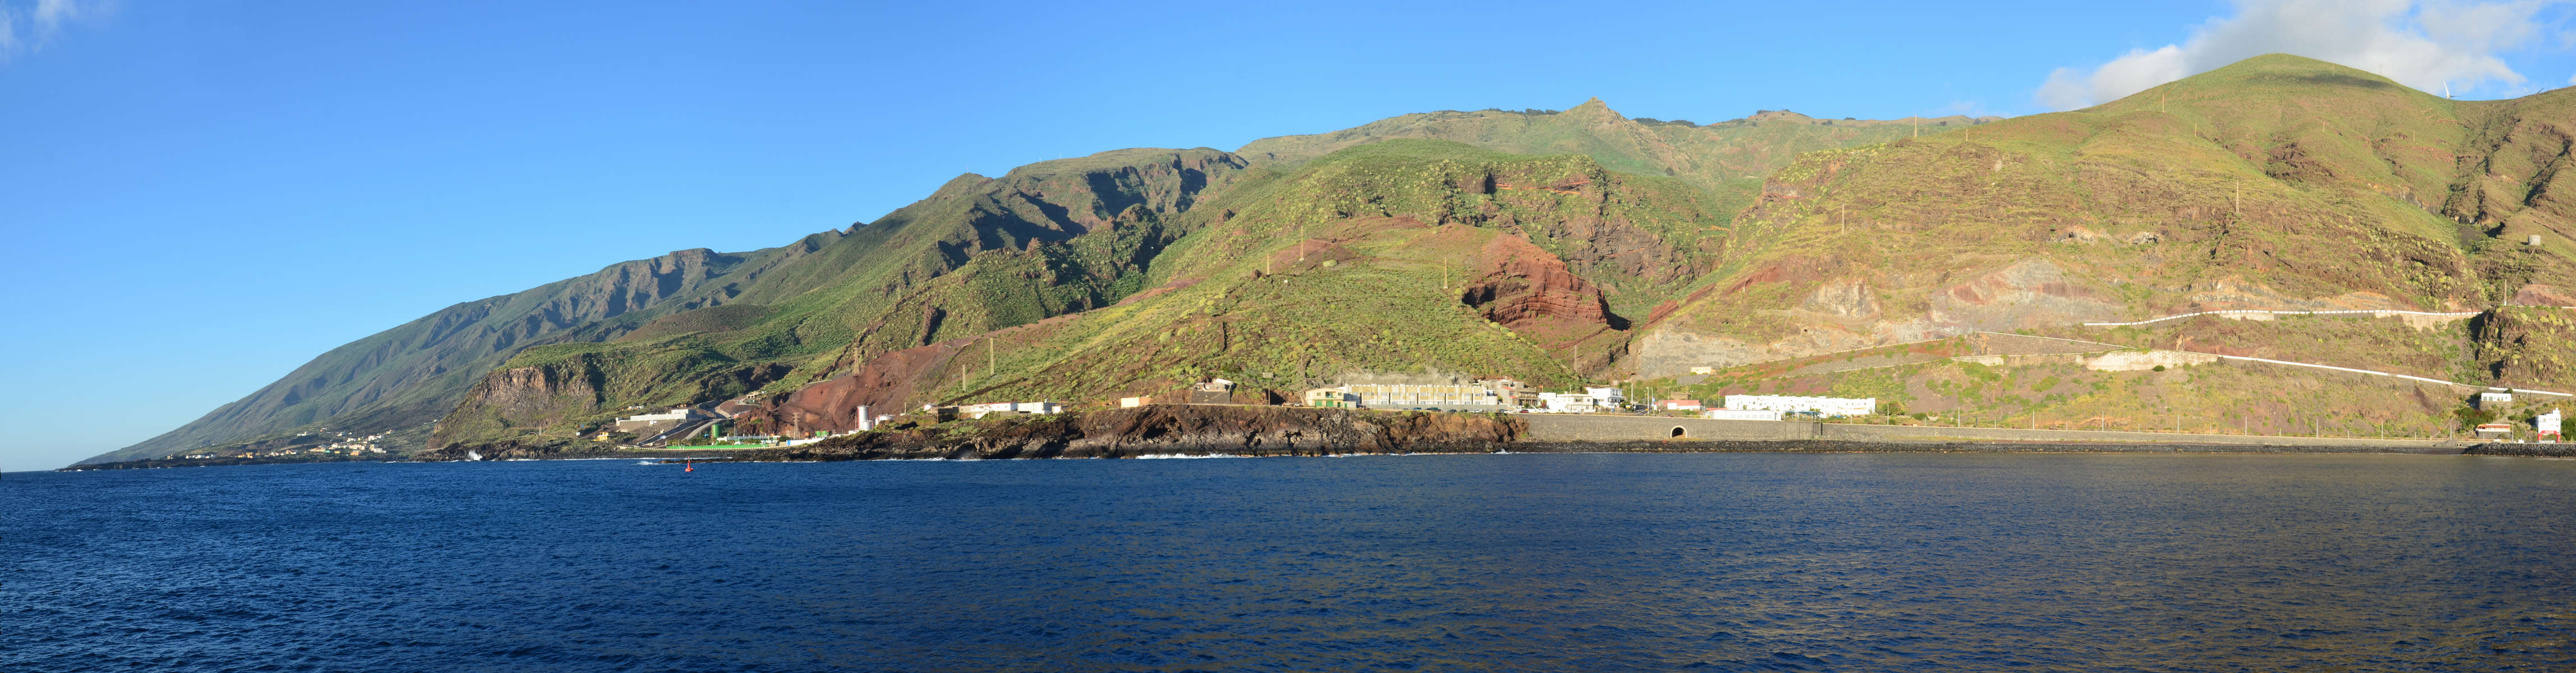 El Hierro - Canary Islands.jpg